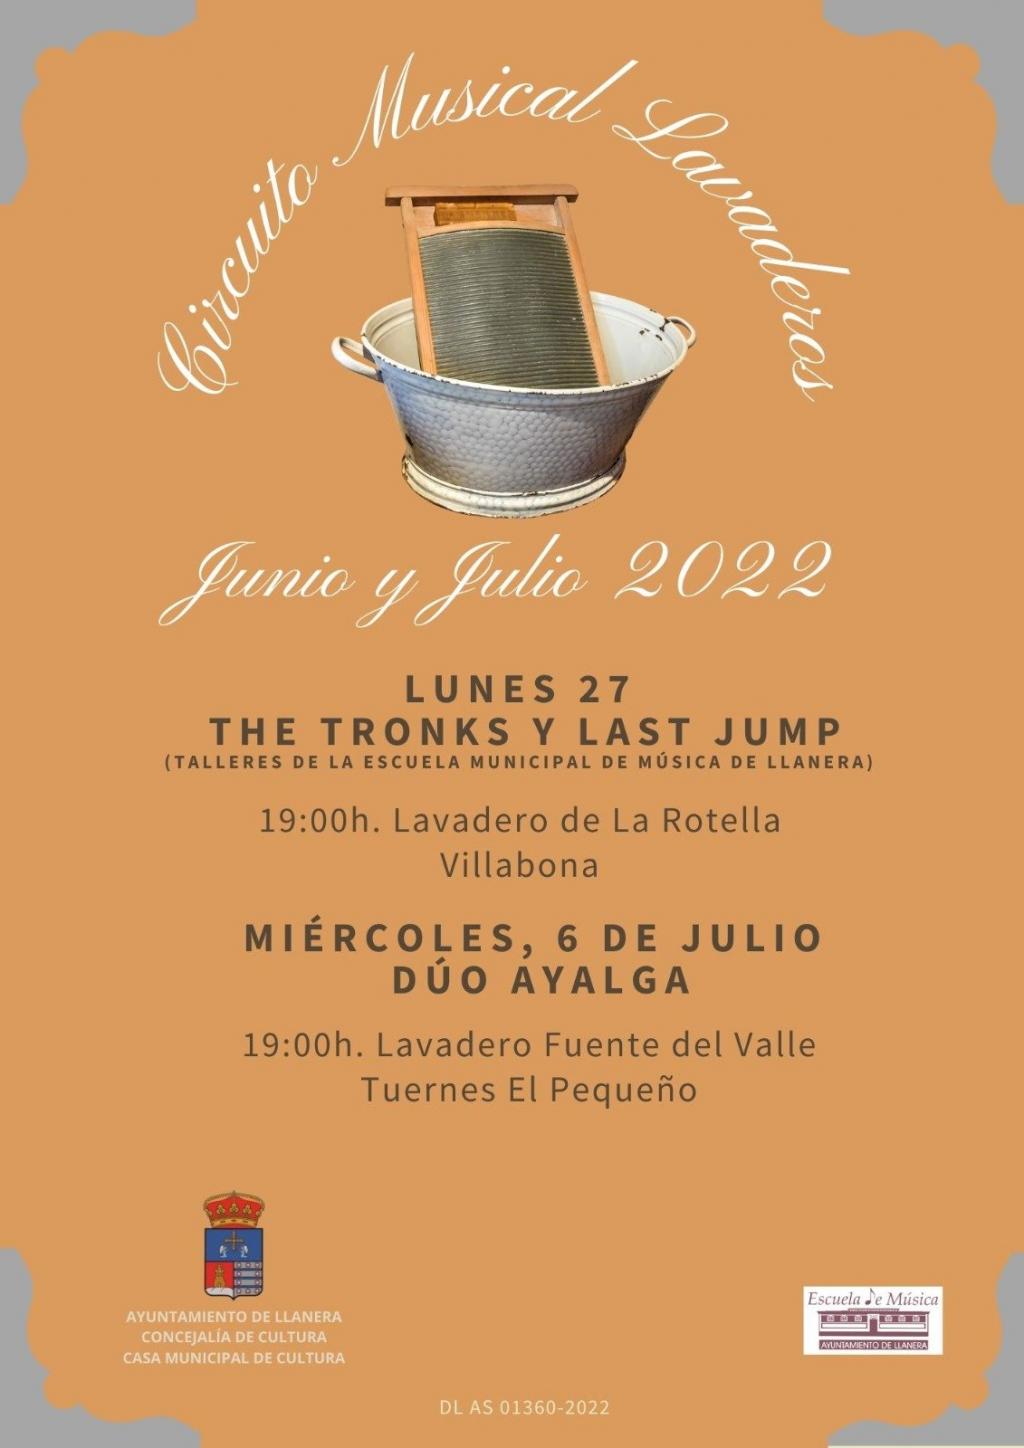 El Tapin - El Lavadero de La Rotella en Villabona acogerá el concierto de The Tronks y Last Jump el lunes 27 de junio a las 19 horas